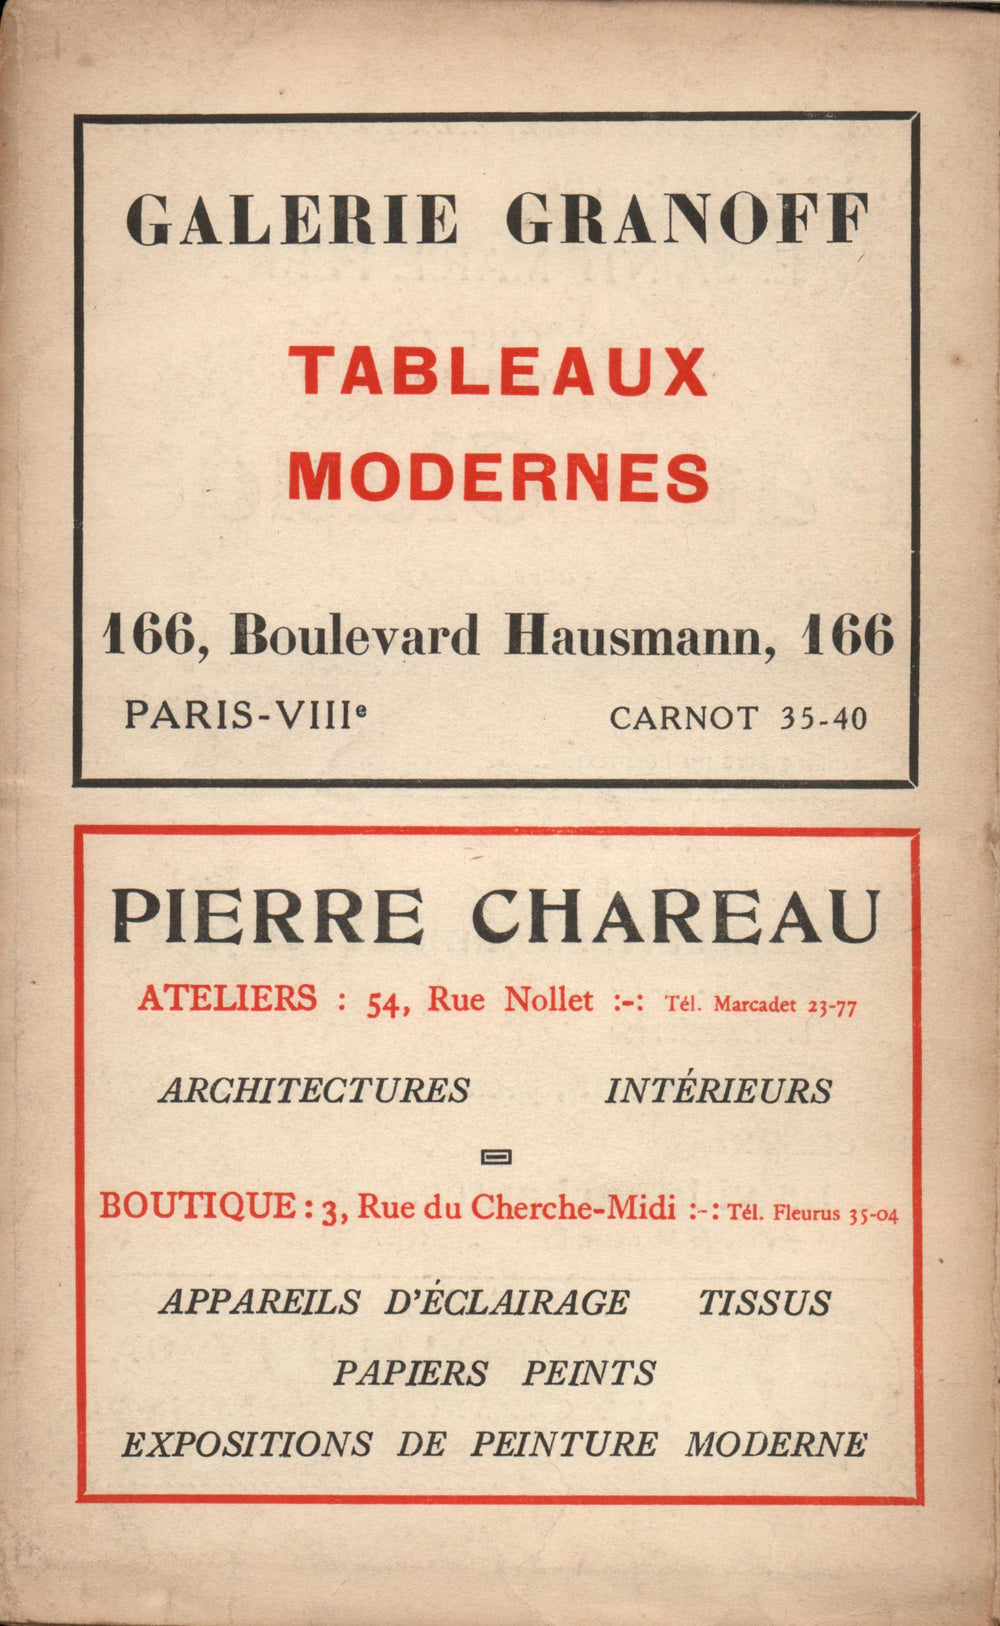 La Nouvelle Revue Française N' 151 (Avril 1926)